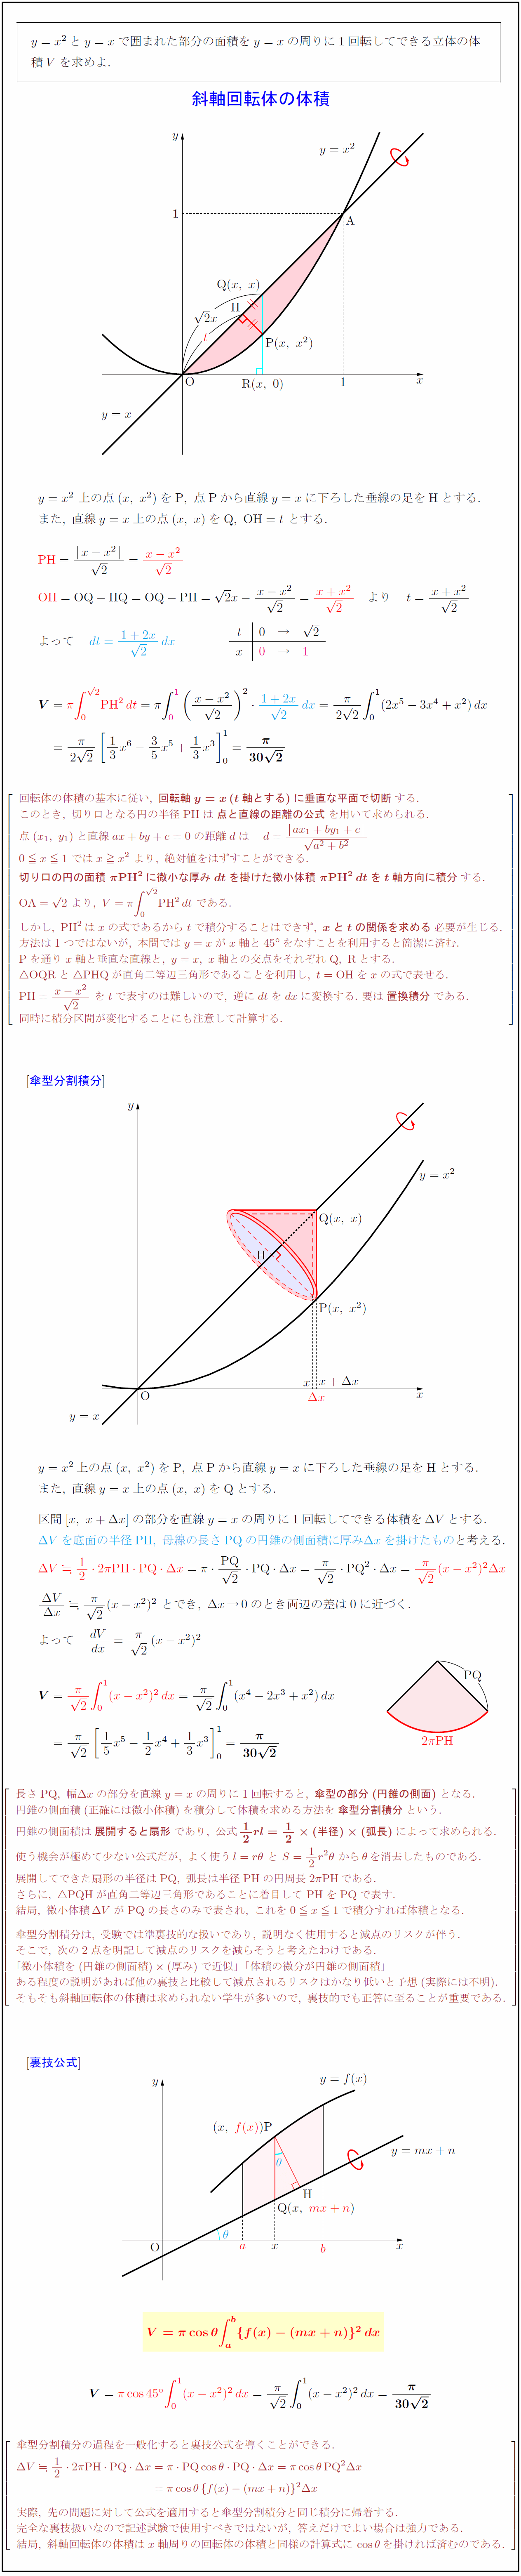 高校数学 斜軸回転体の体積 傘型分割積分 裏技公式 受験の月